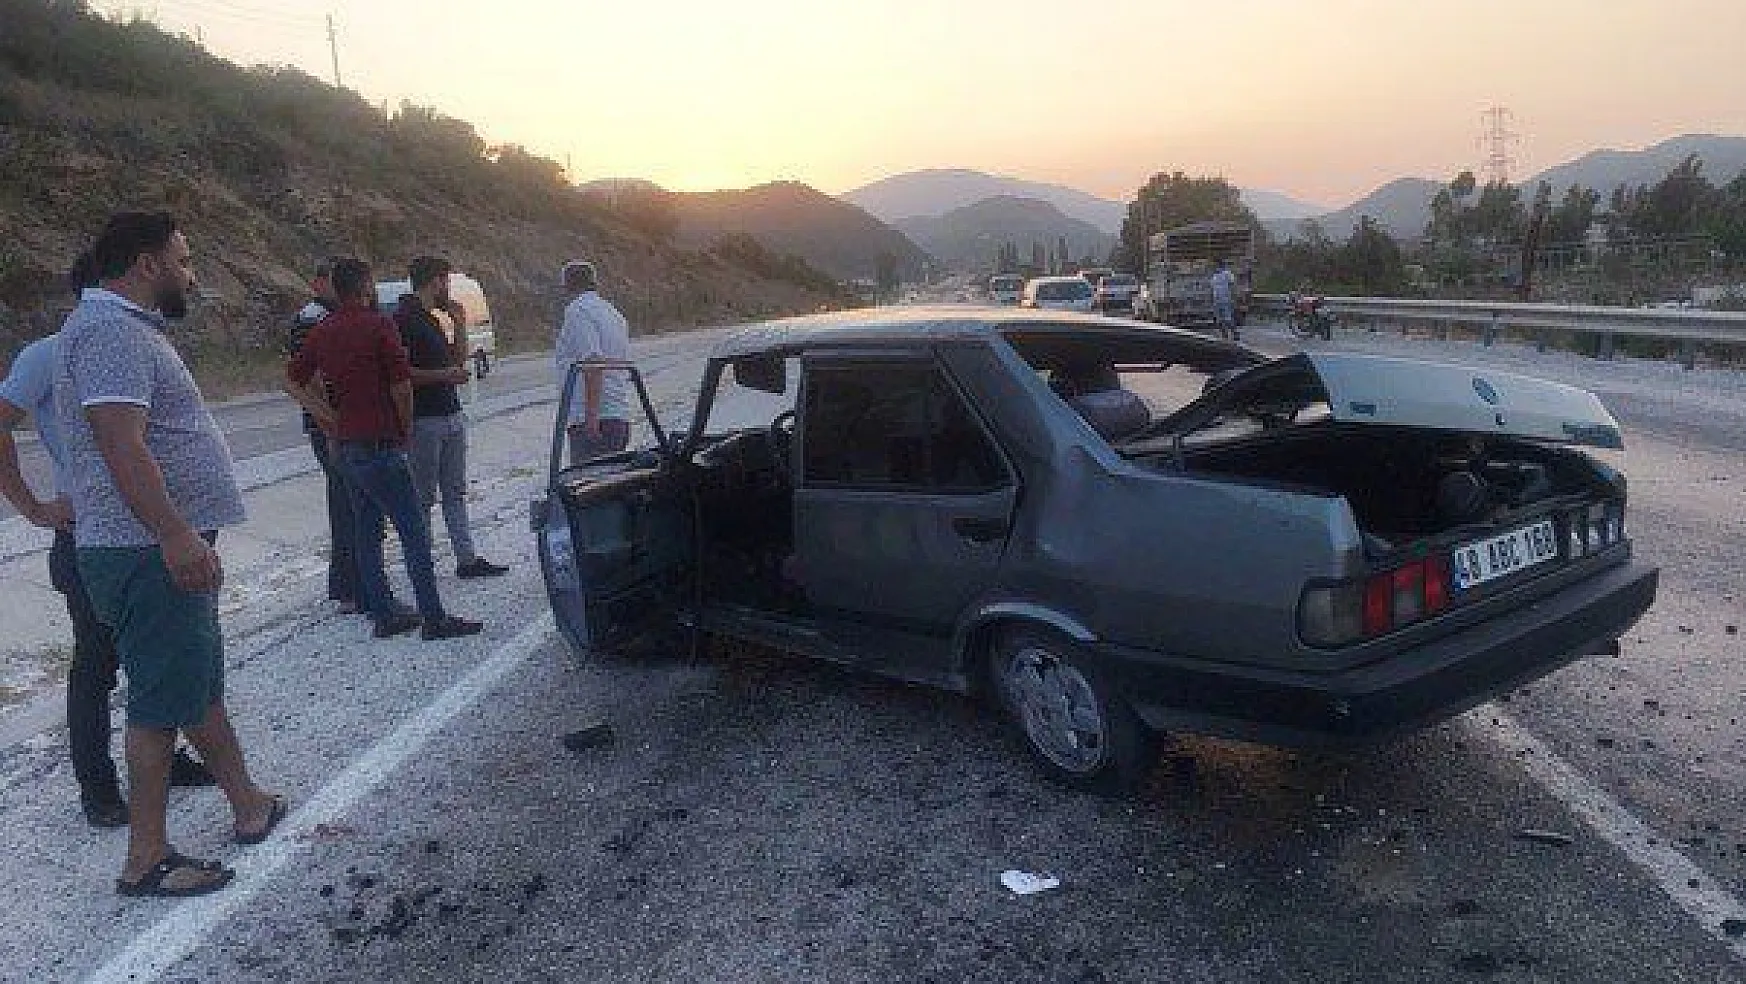 Milas'ta trafik kazası: 2 yaralı